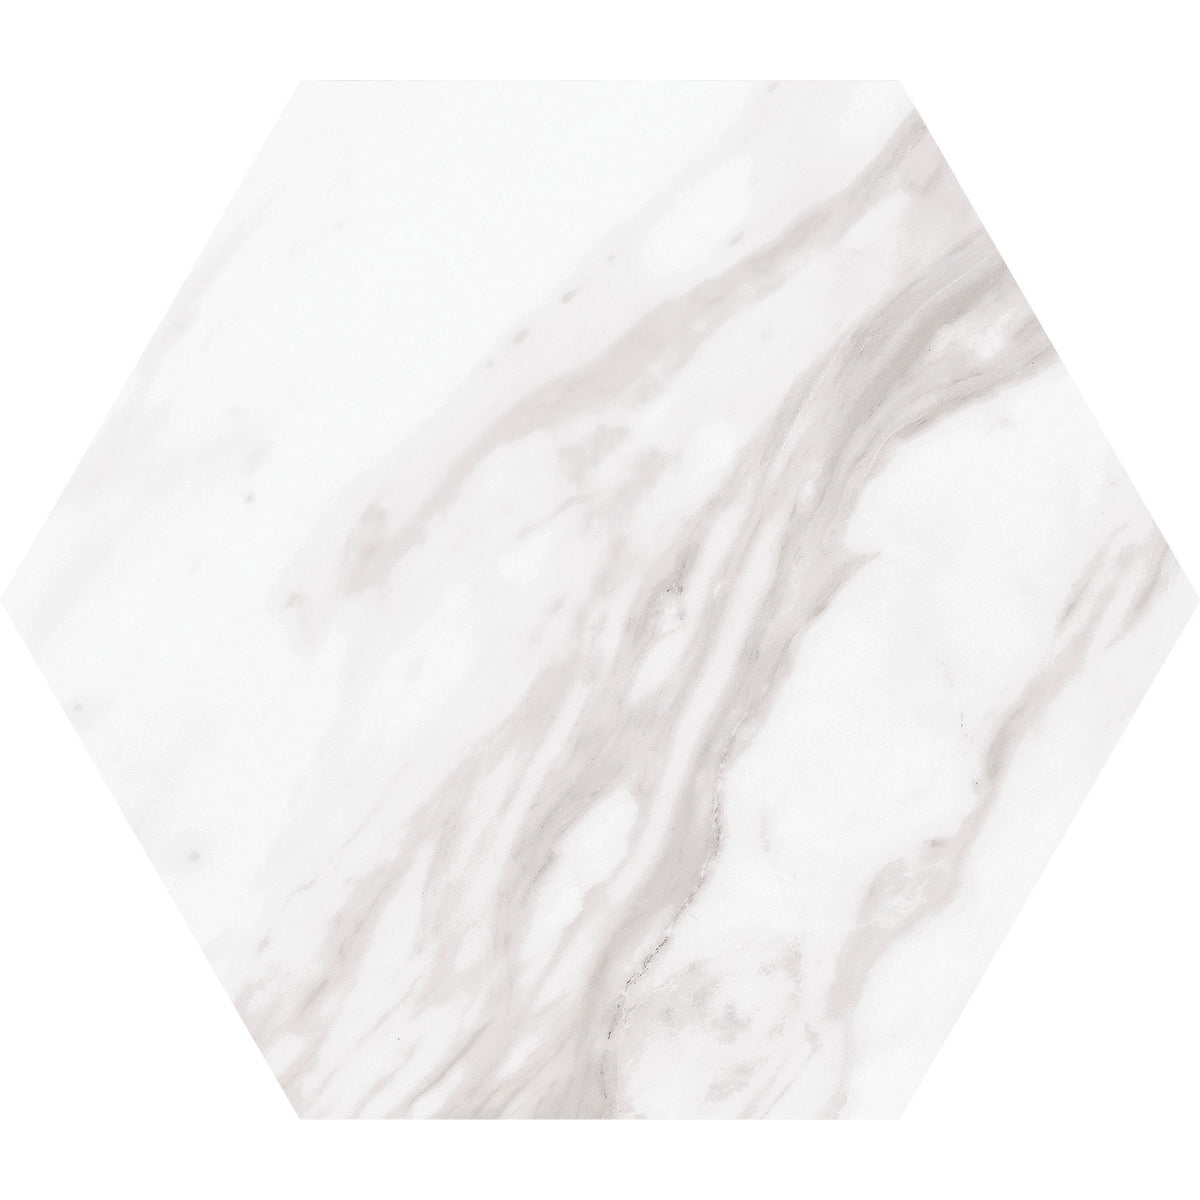 Daltile - Perpetuo - 8 in. Hexagon Glazed Porcelain Floor Tile - Timeless White Matte 4